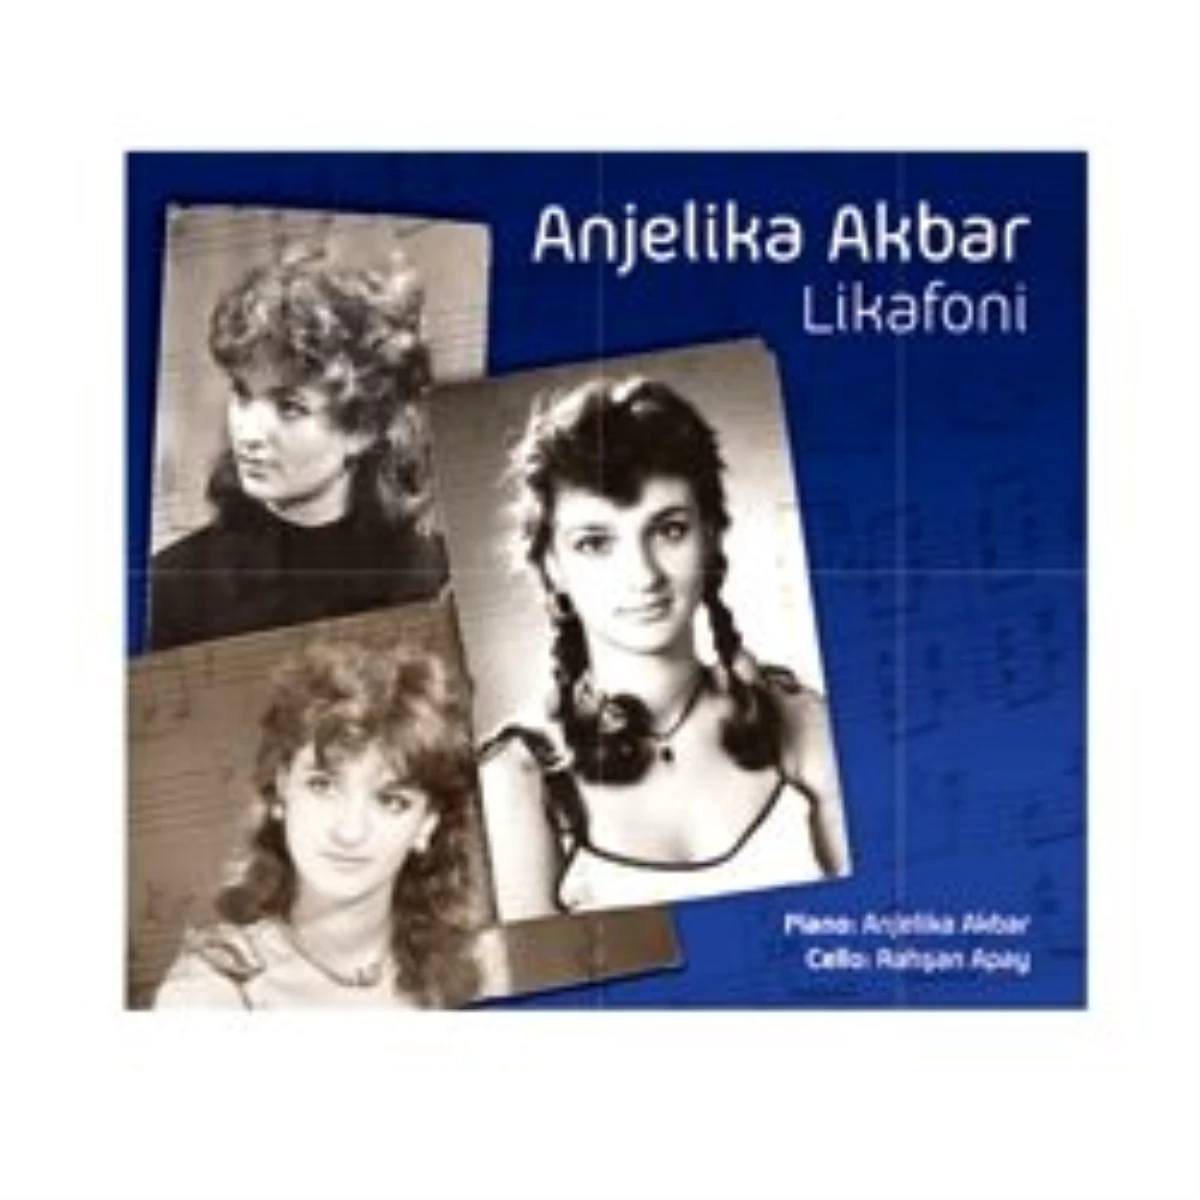 
Anjelika Akbar’ın "Likafoni" Adlı Albümü
